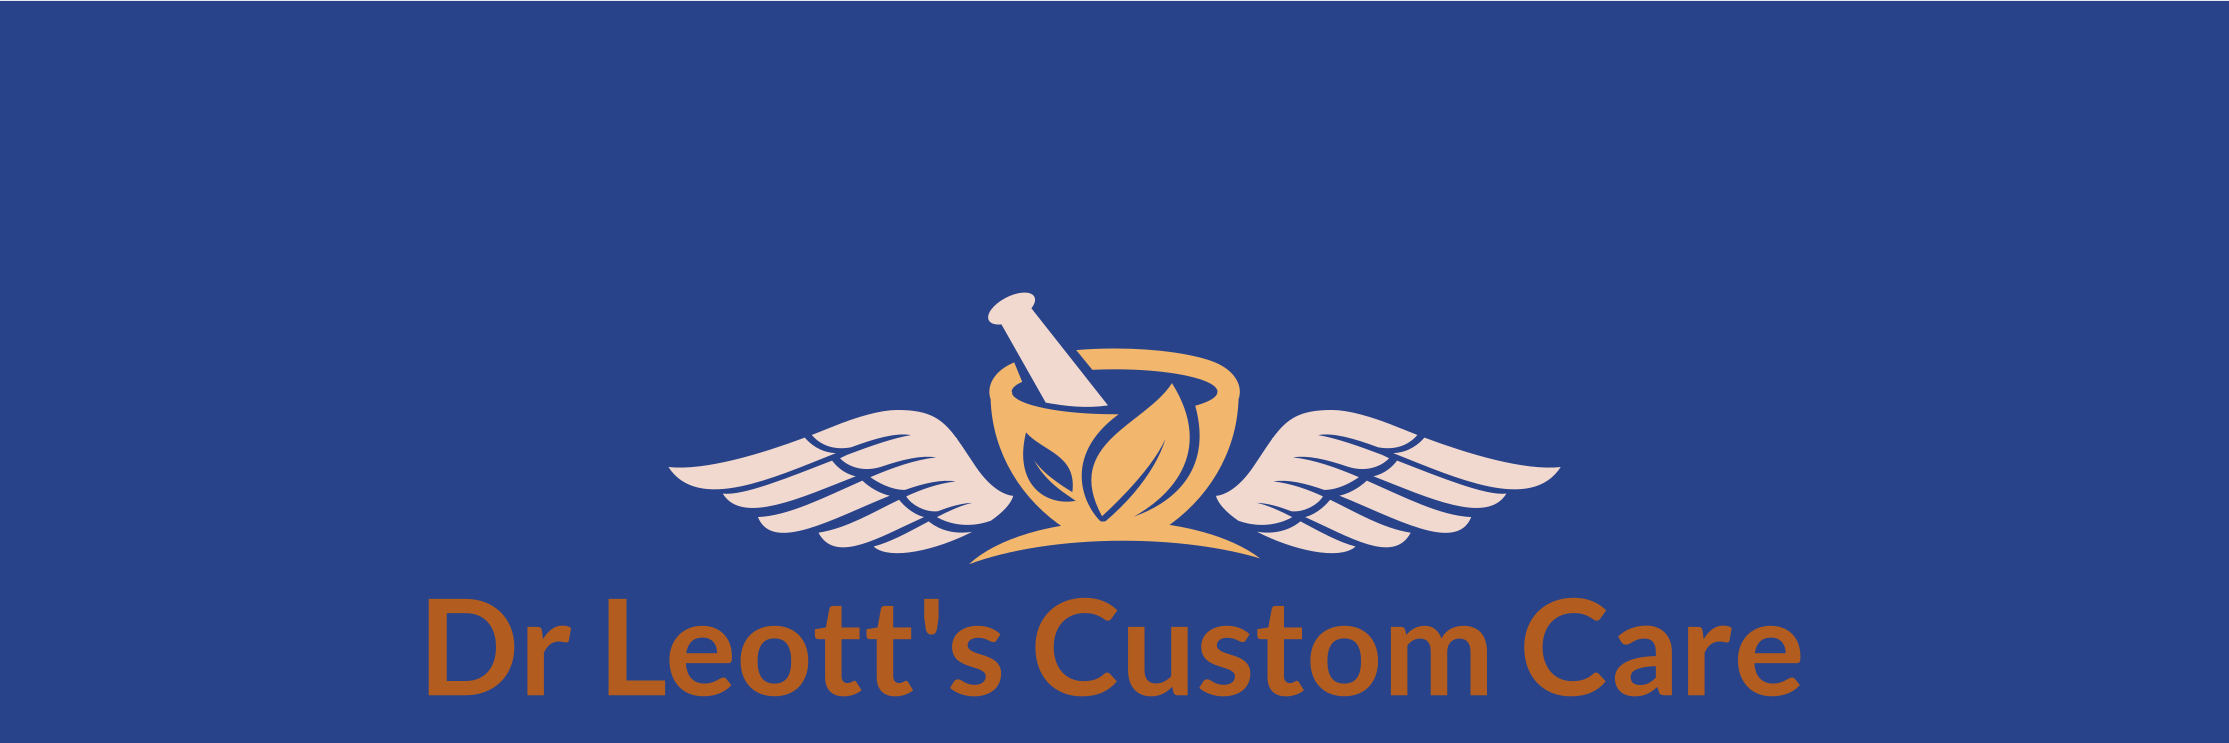 Dr Leott's Custom Care